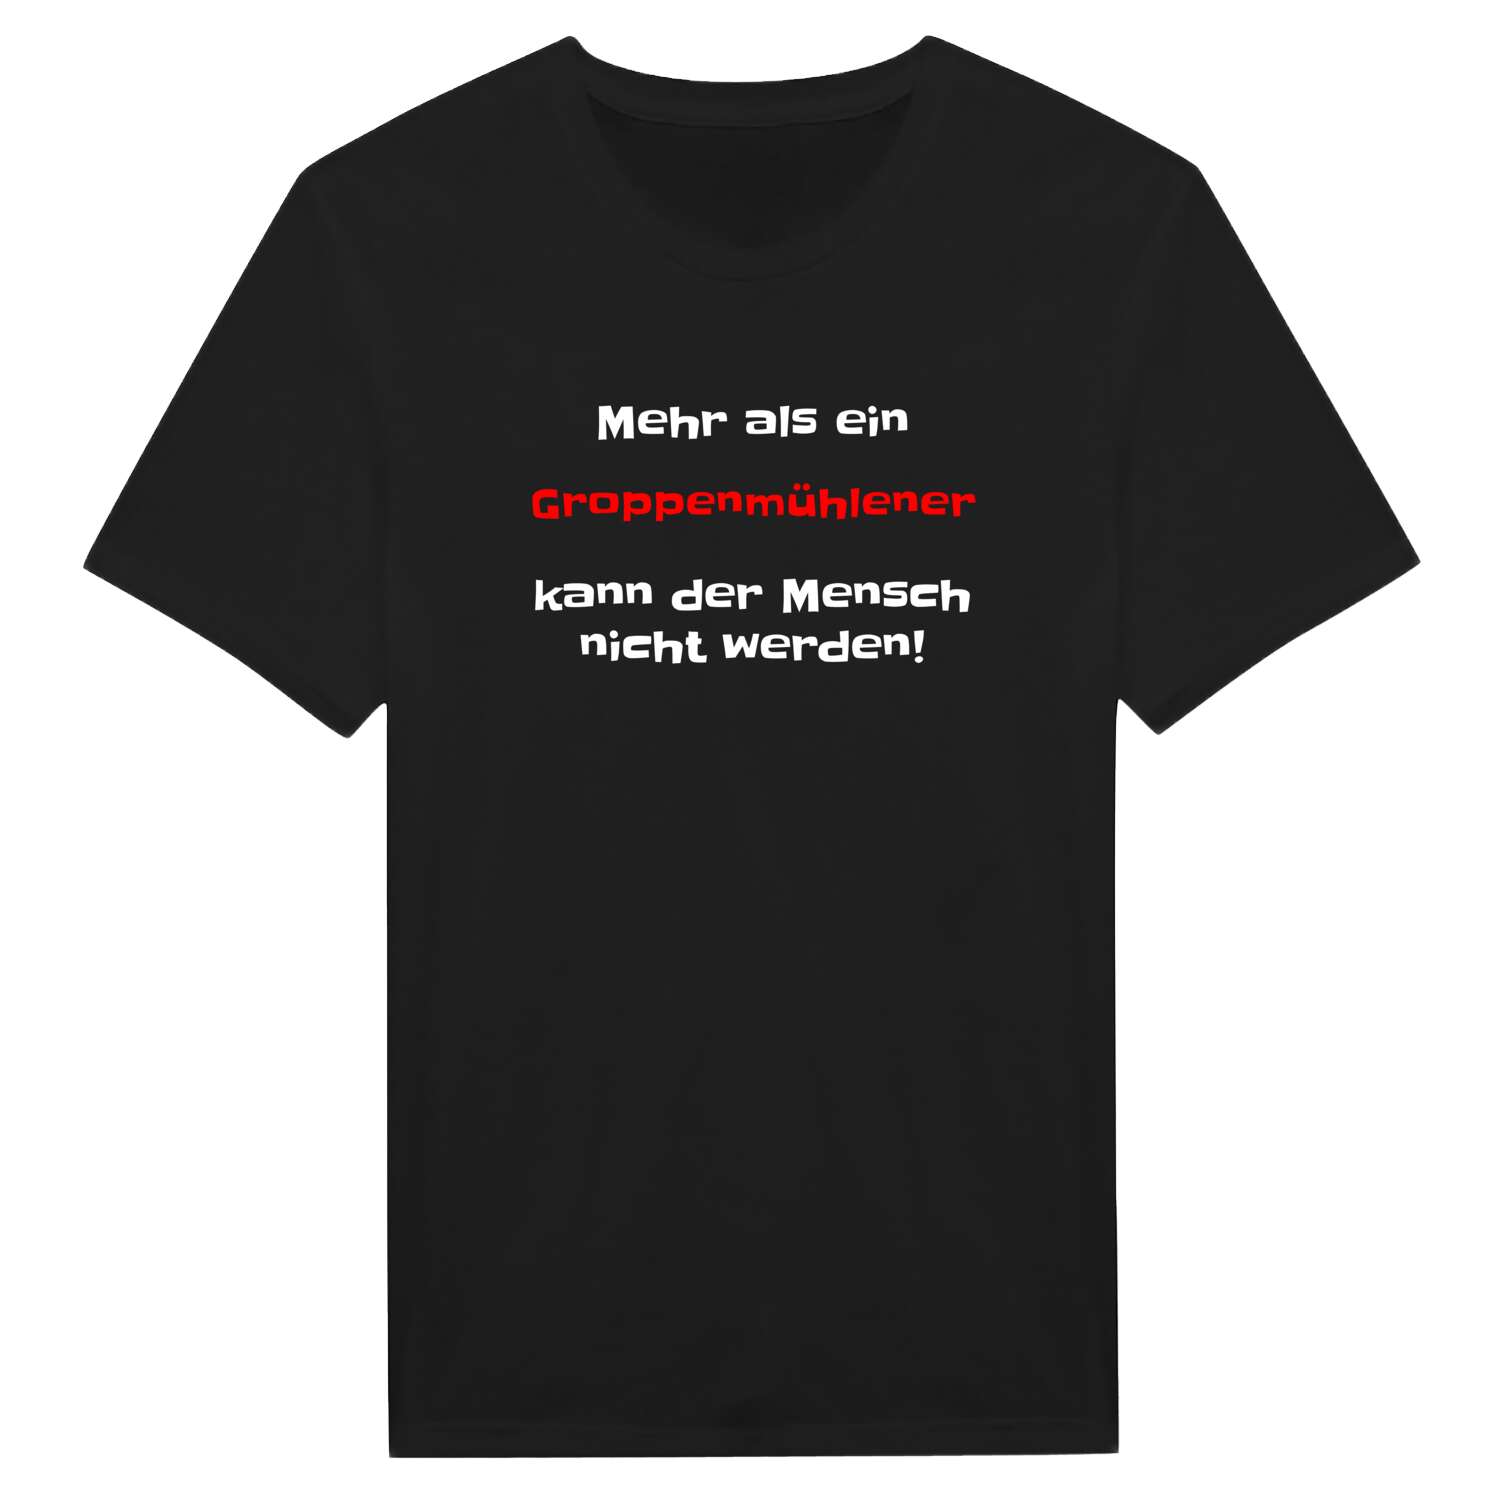 Groppenmühle T-Shirt »Mehr als ein«